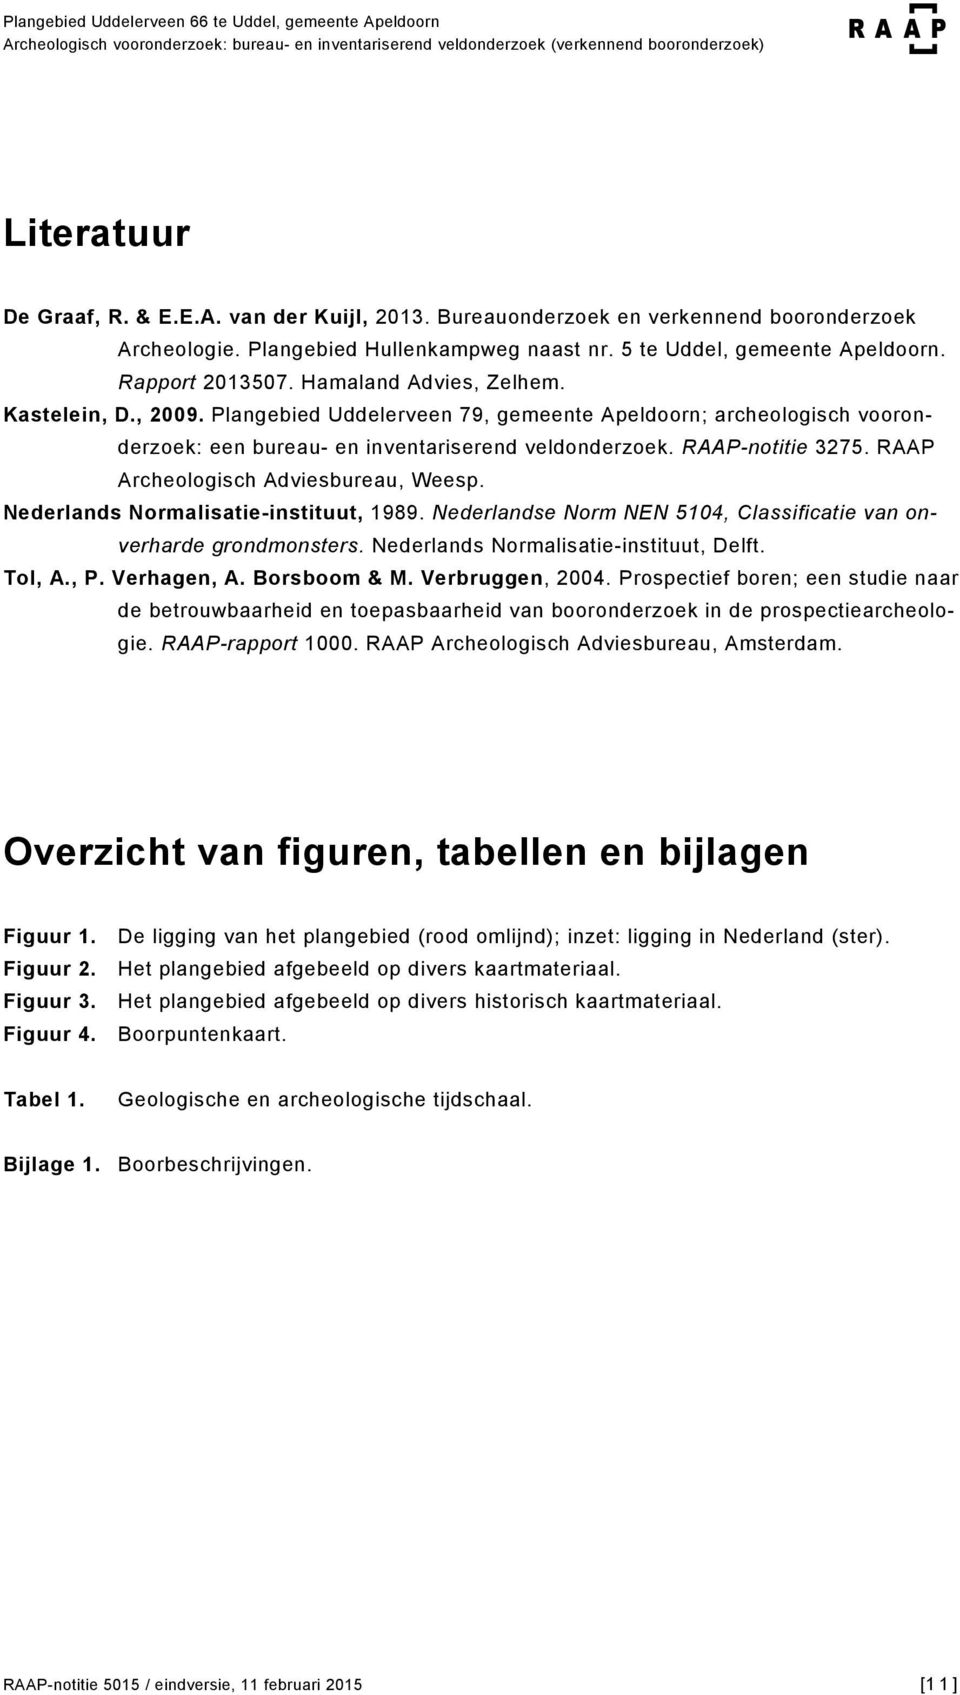 RAAP Archeologisch Adviesbureau, Weesp. Nederlands Normalisatie-instituut, 1989. Nederlandse Norm NEN 5104, Classificatie van onverharde grondmonsters. Nederlands Normalisatie-instituut, Delft.